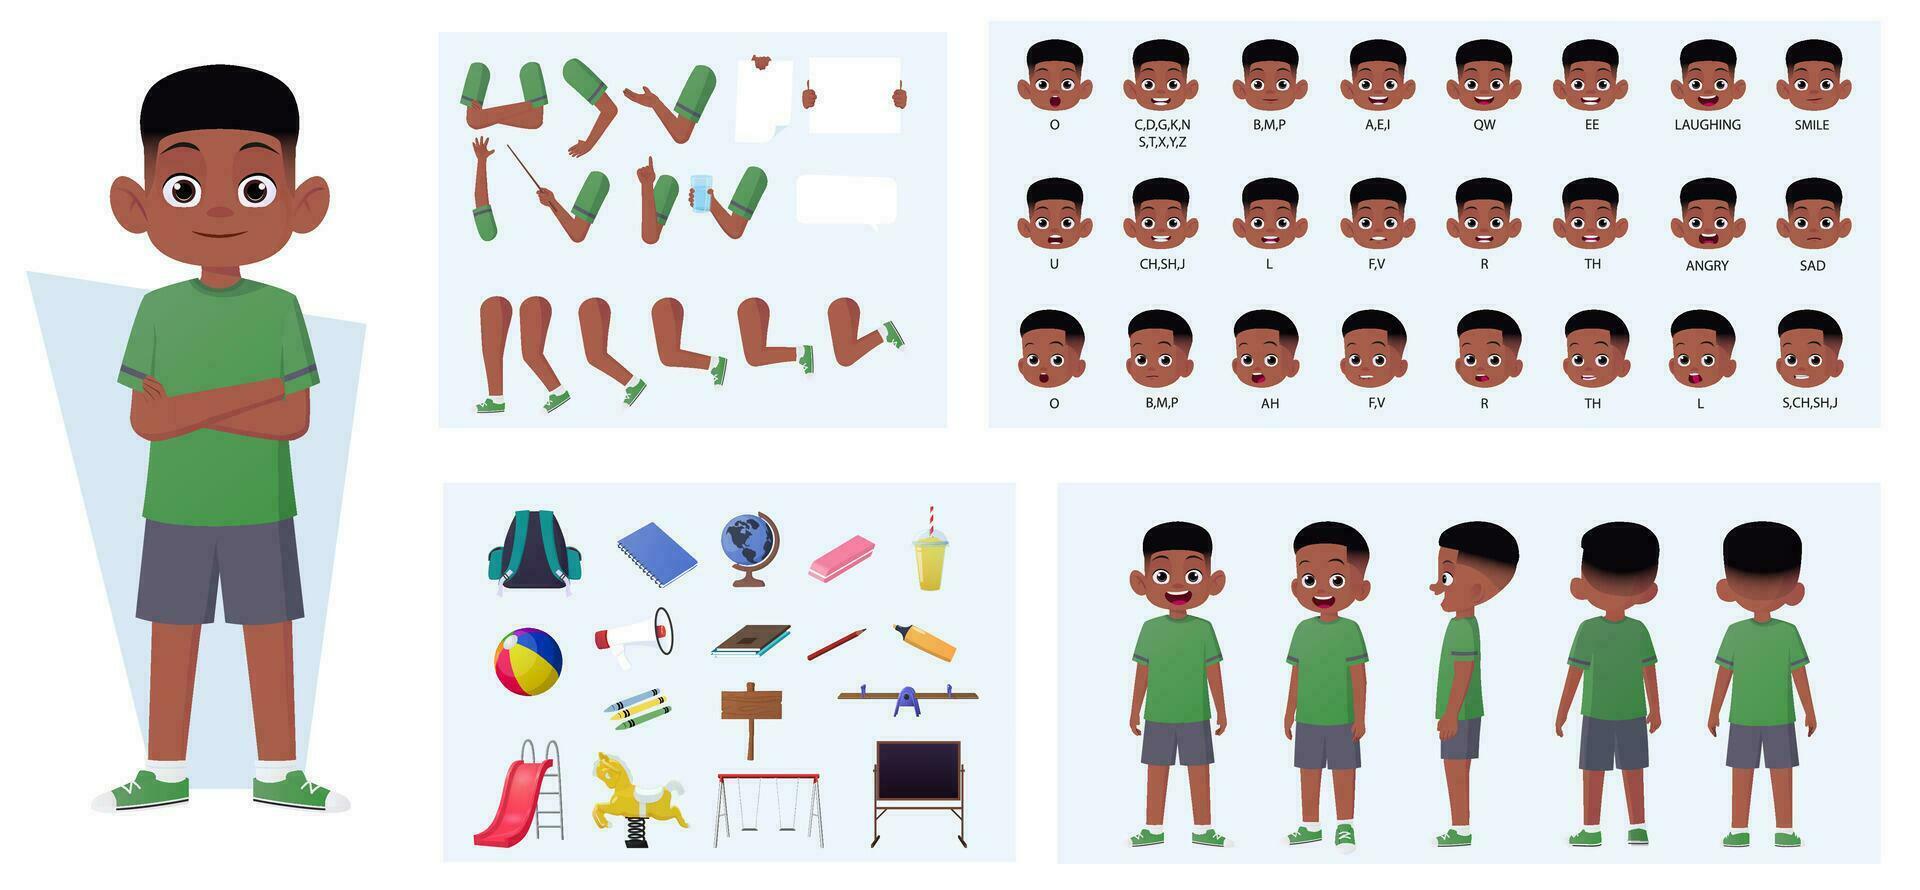 Afrikaanse Amerikaans jongen karakter creatie met gebaren, gelaats uitdrukkingen, en verschillend poses vector